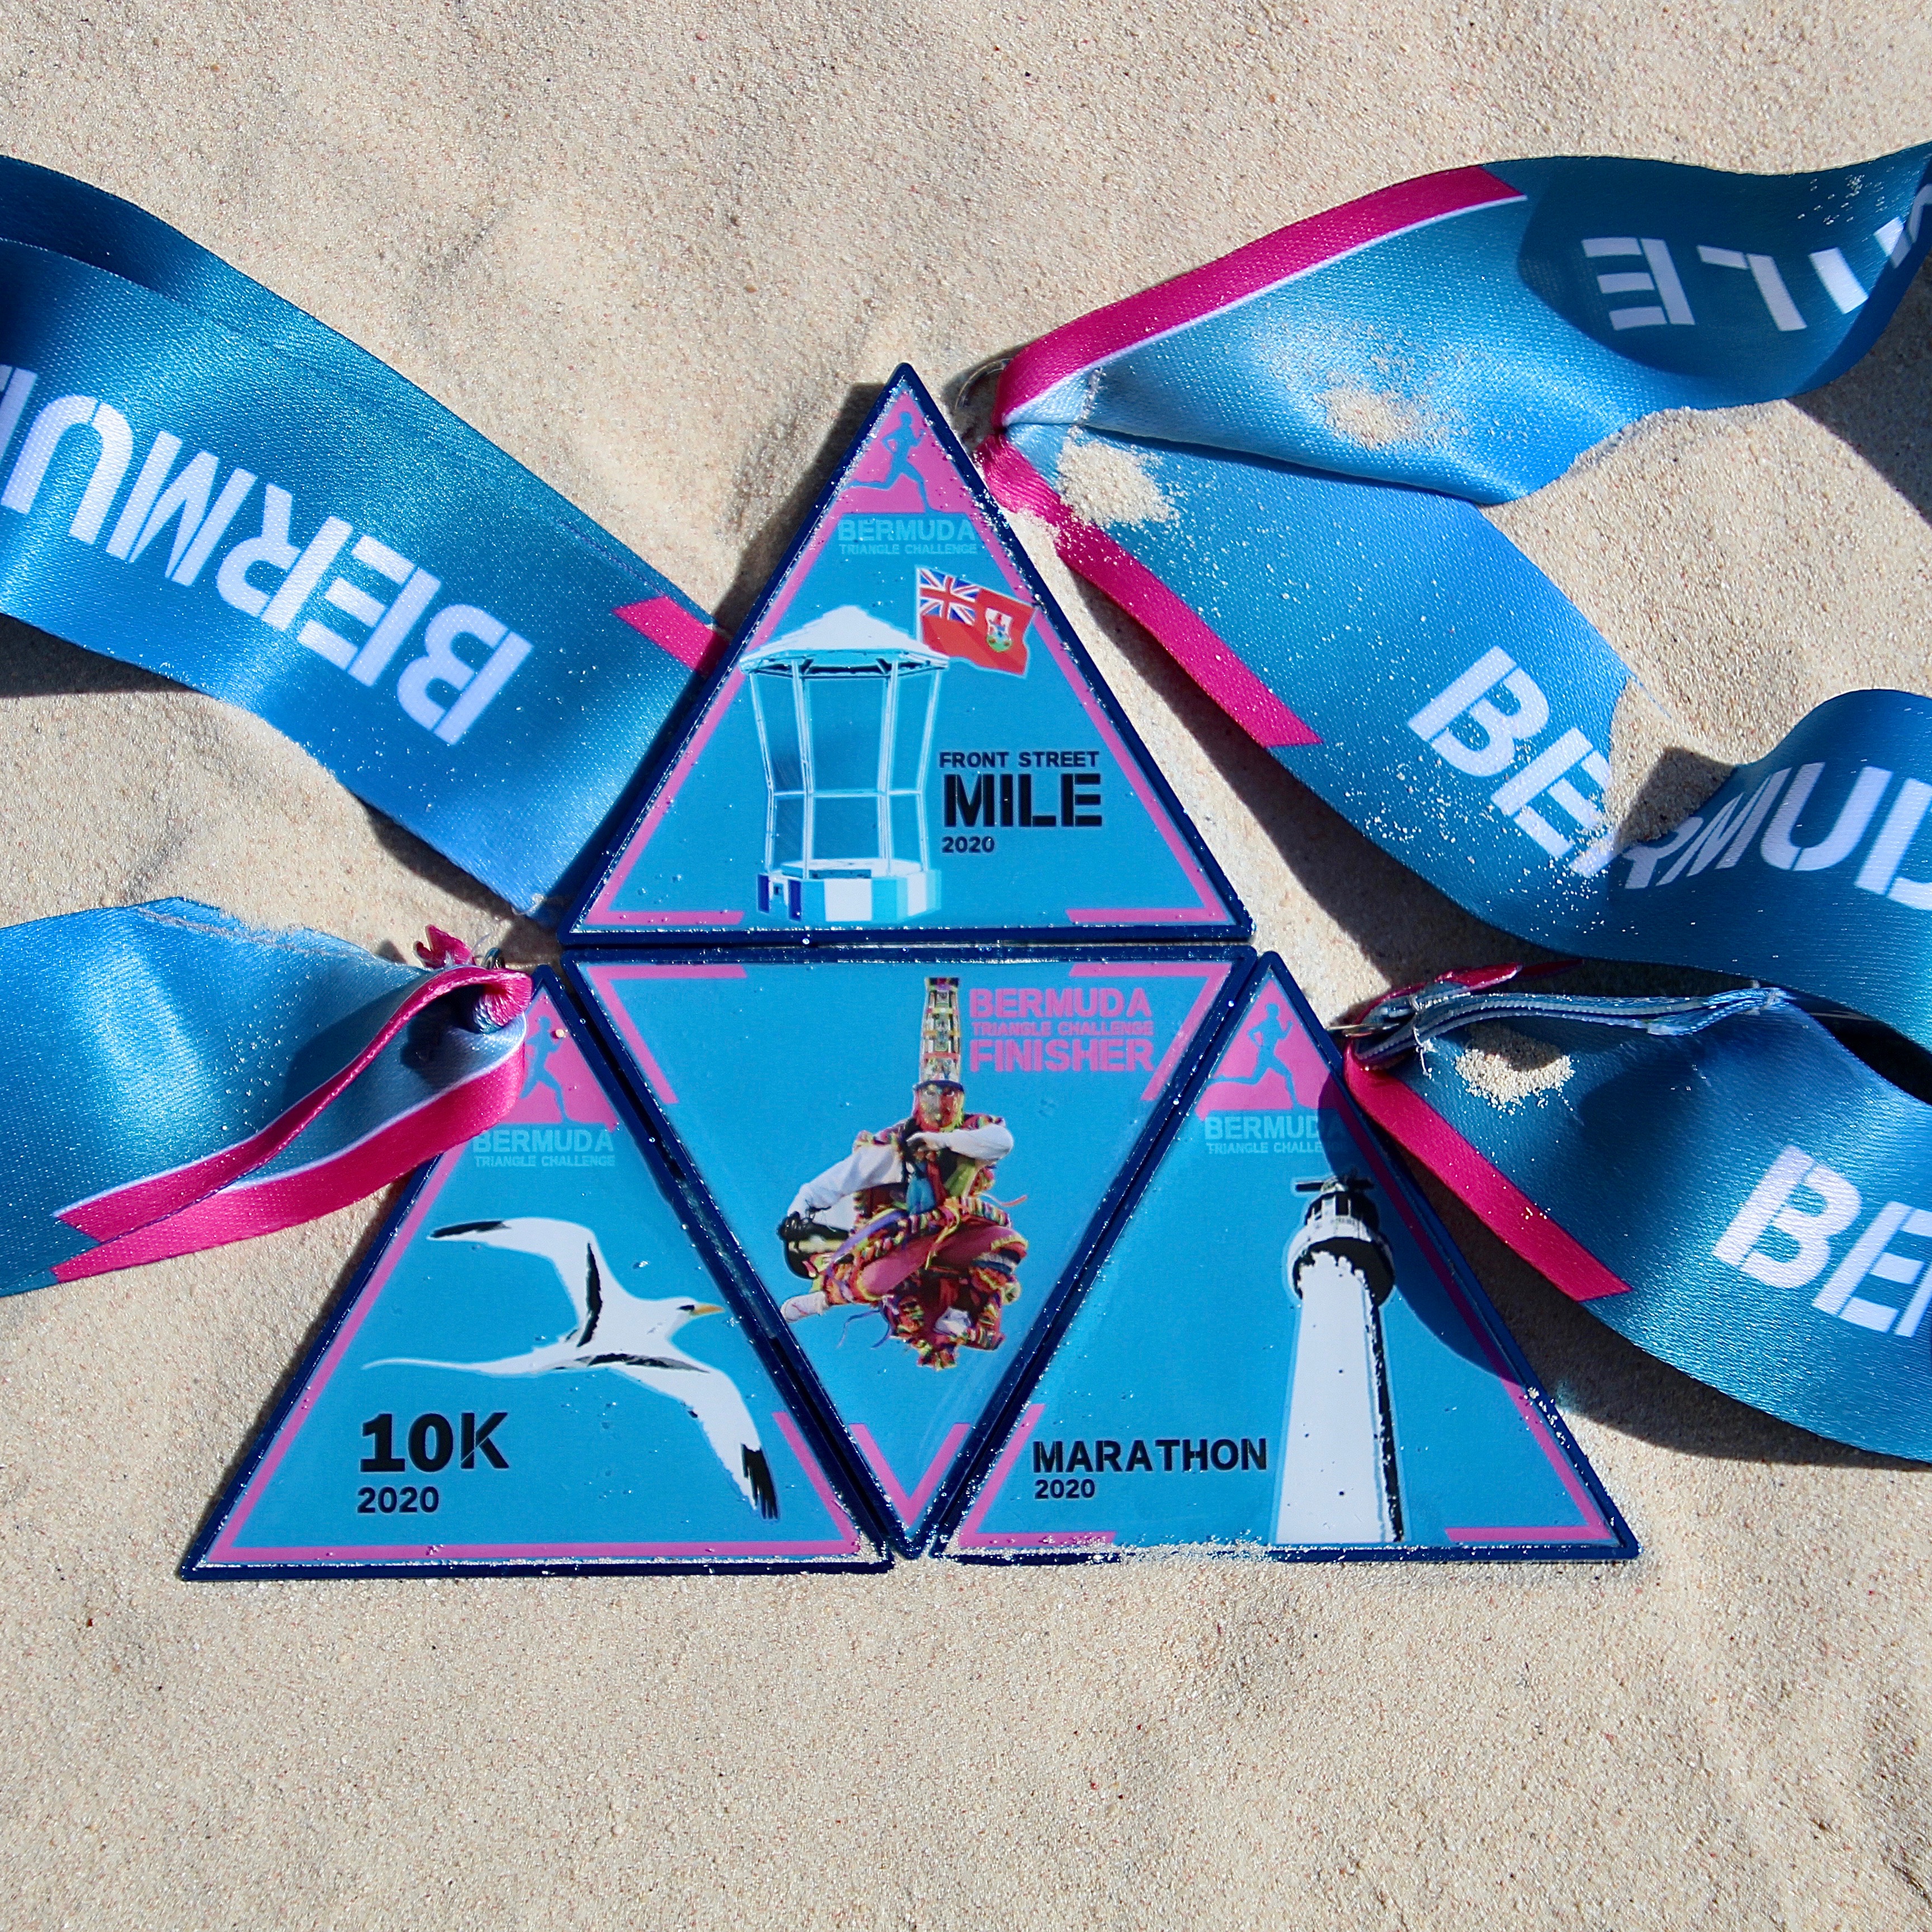 Bermuda Triangle Challenge - Front Street Mile, 10K, Half-Marathon and Marathon